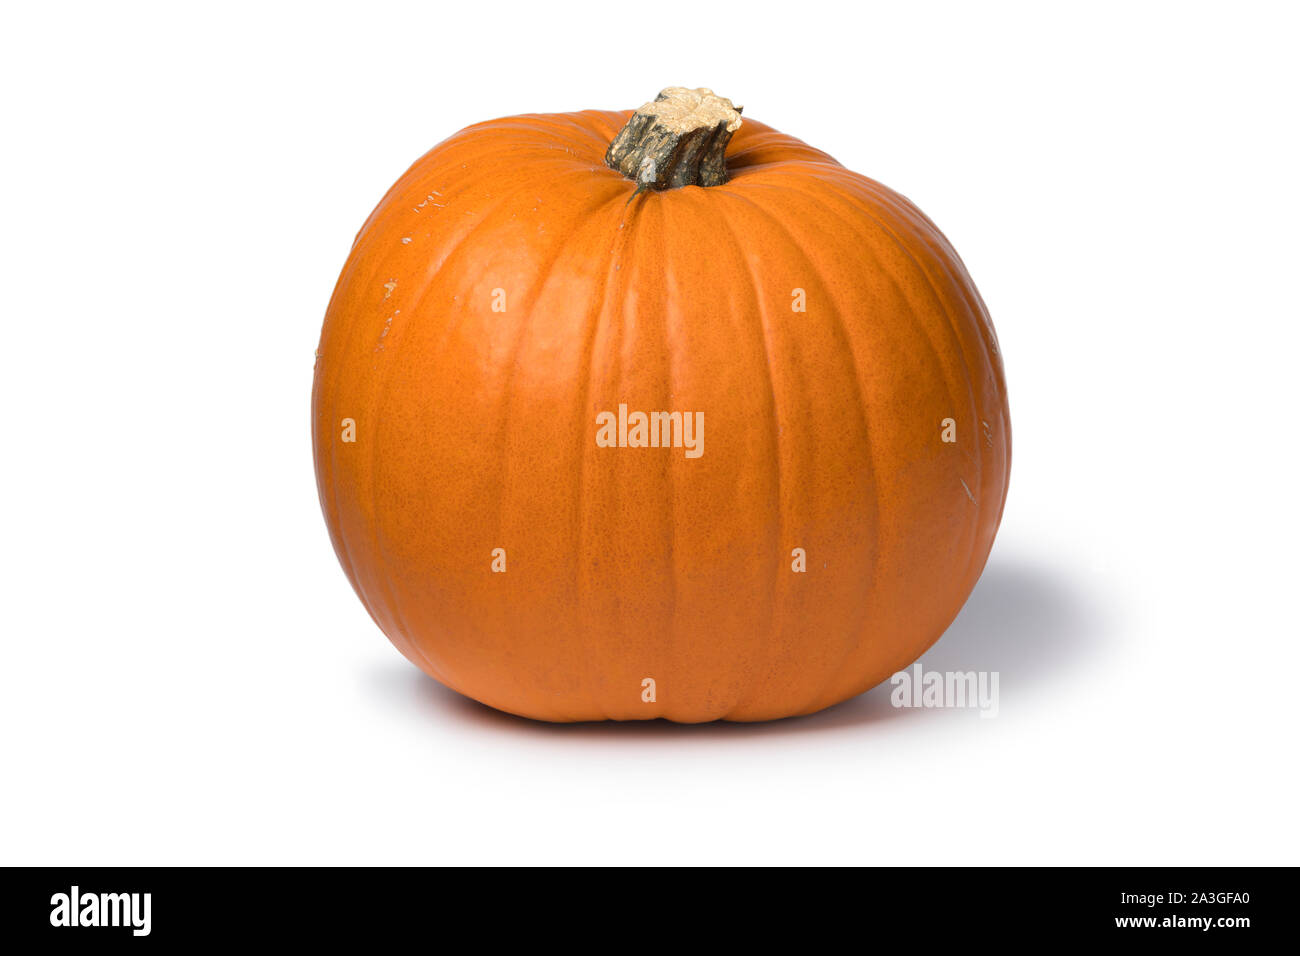 Single whole orange pumpkin isolated on white background Stock Photo